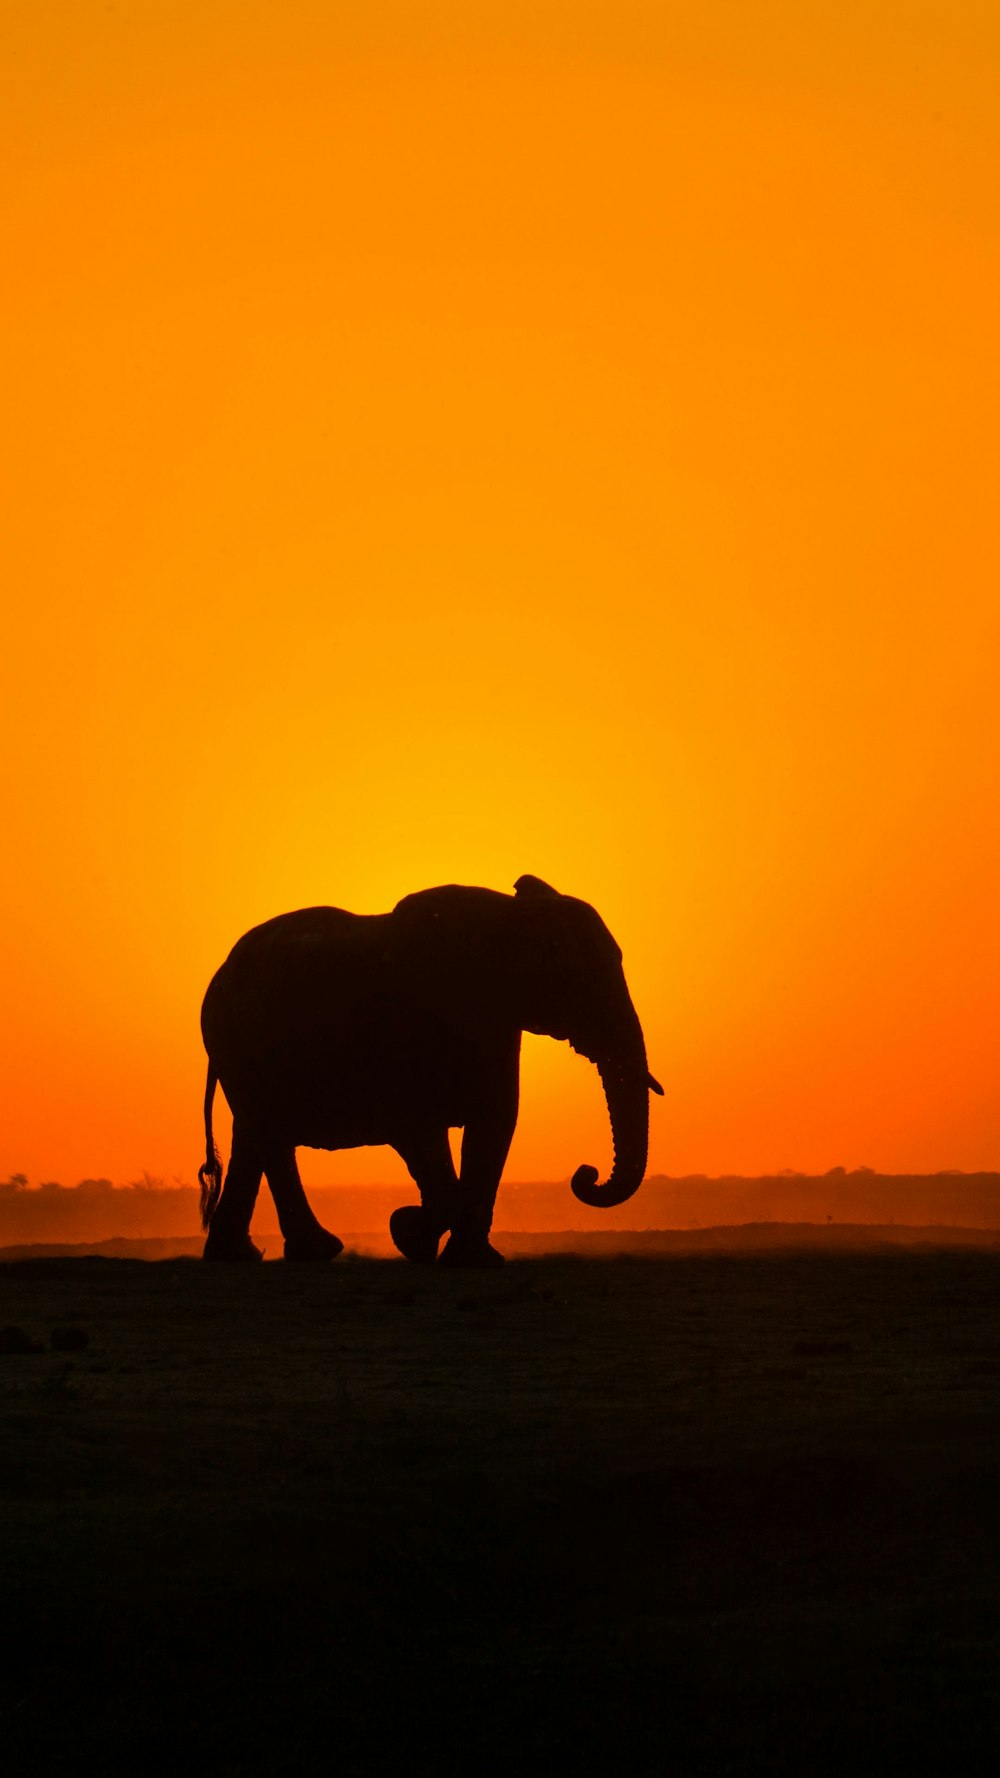 Silueta de elefante caminando en campo marrón durante la puesta del sol